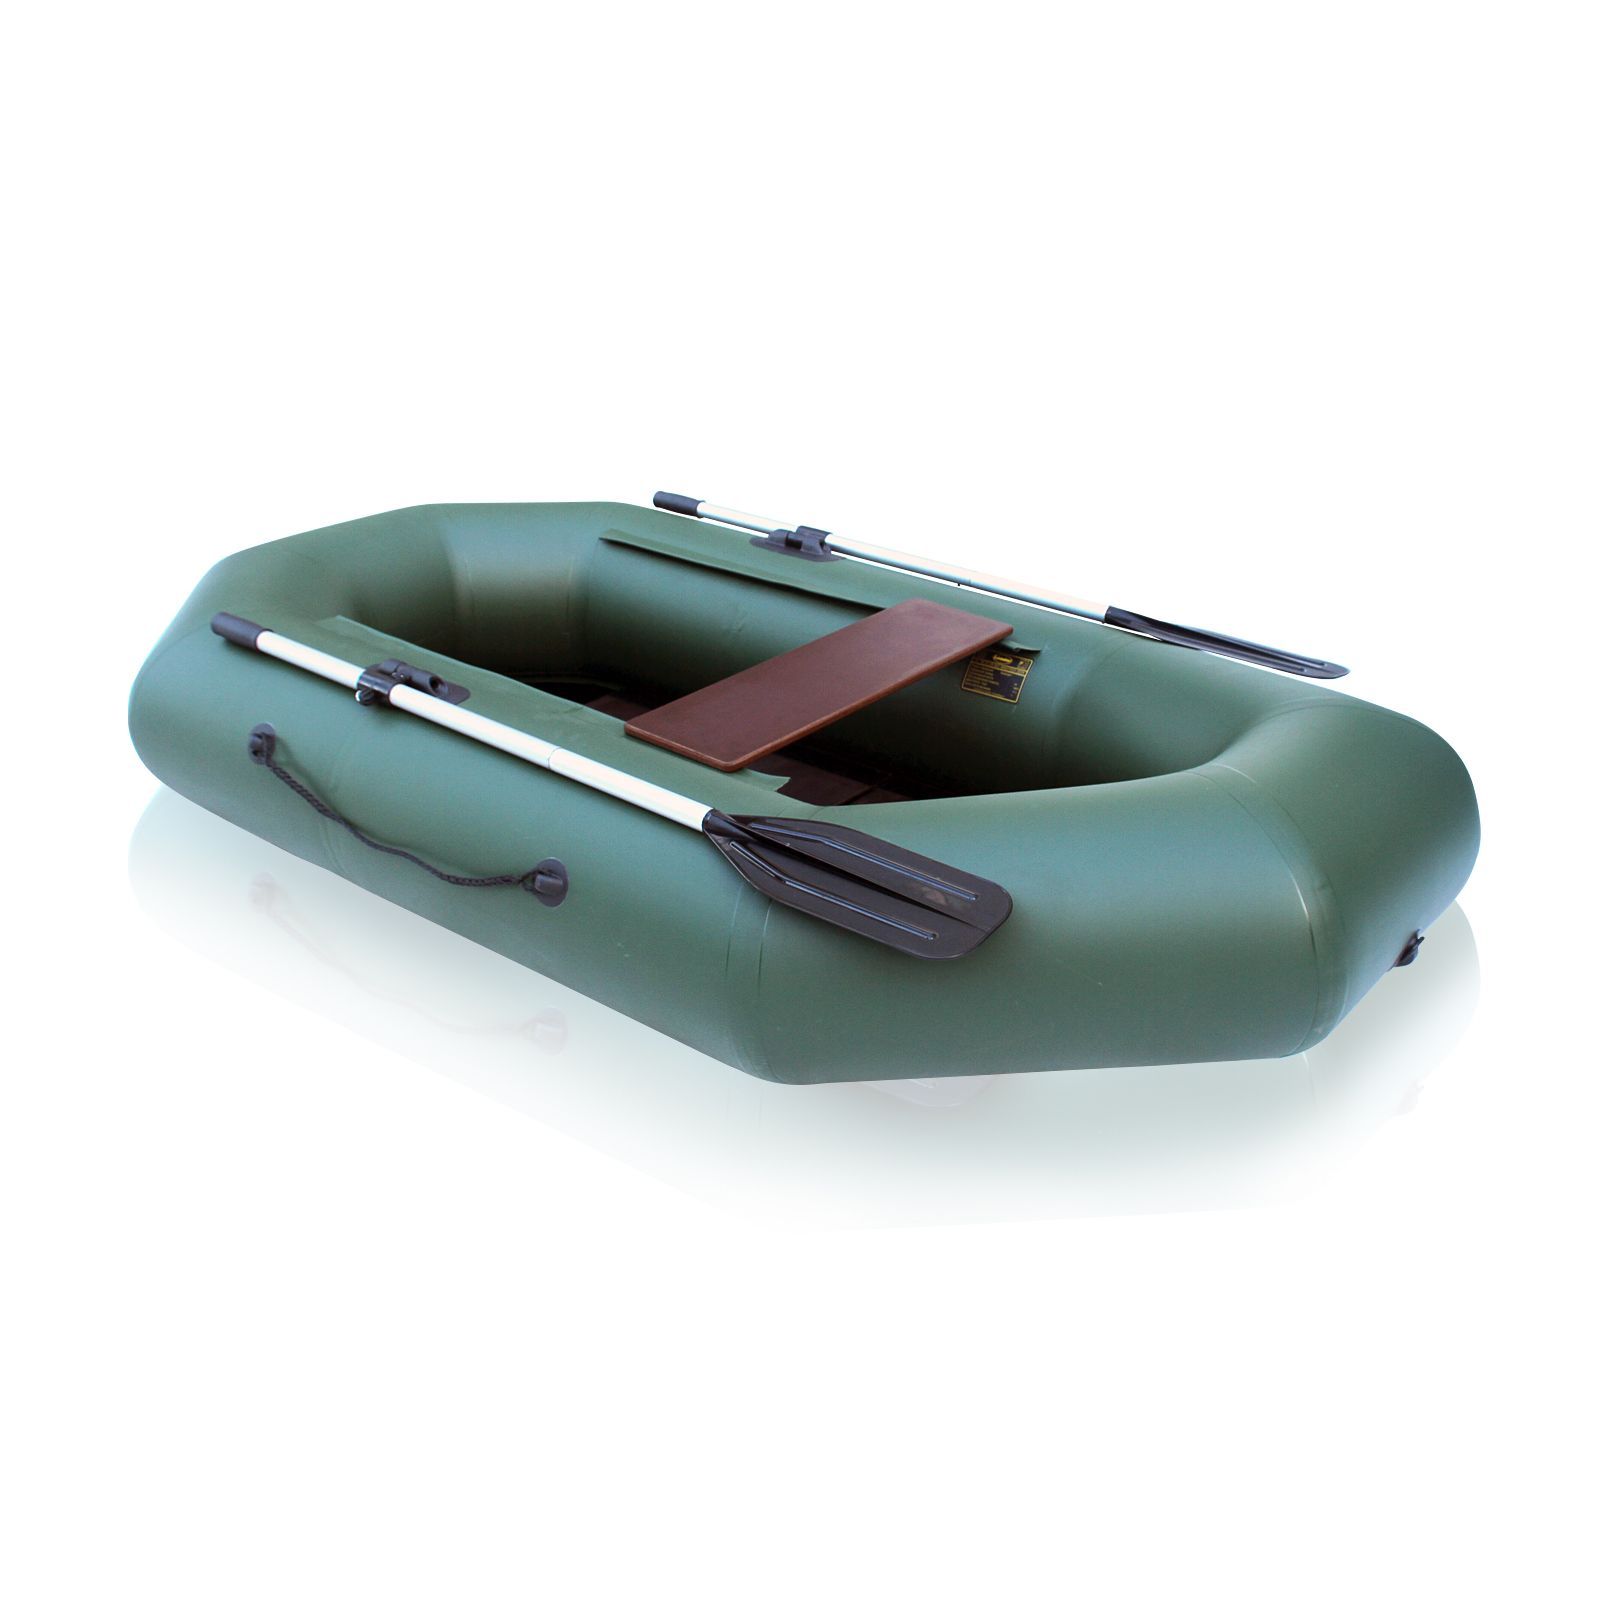 Лодка ПВХ Компакт-220N- ФС фанерная слань зеленый цвет упаковка-мешок оксфорд